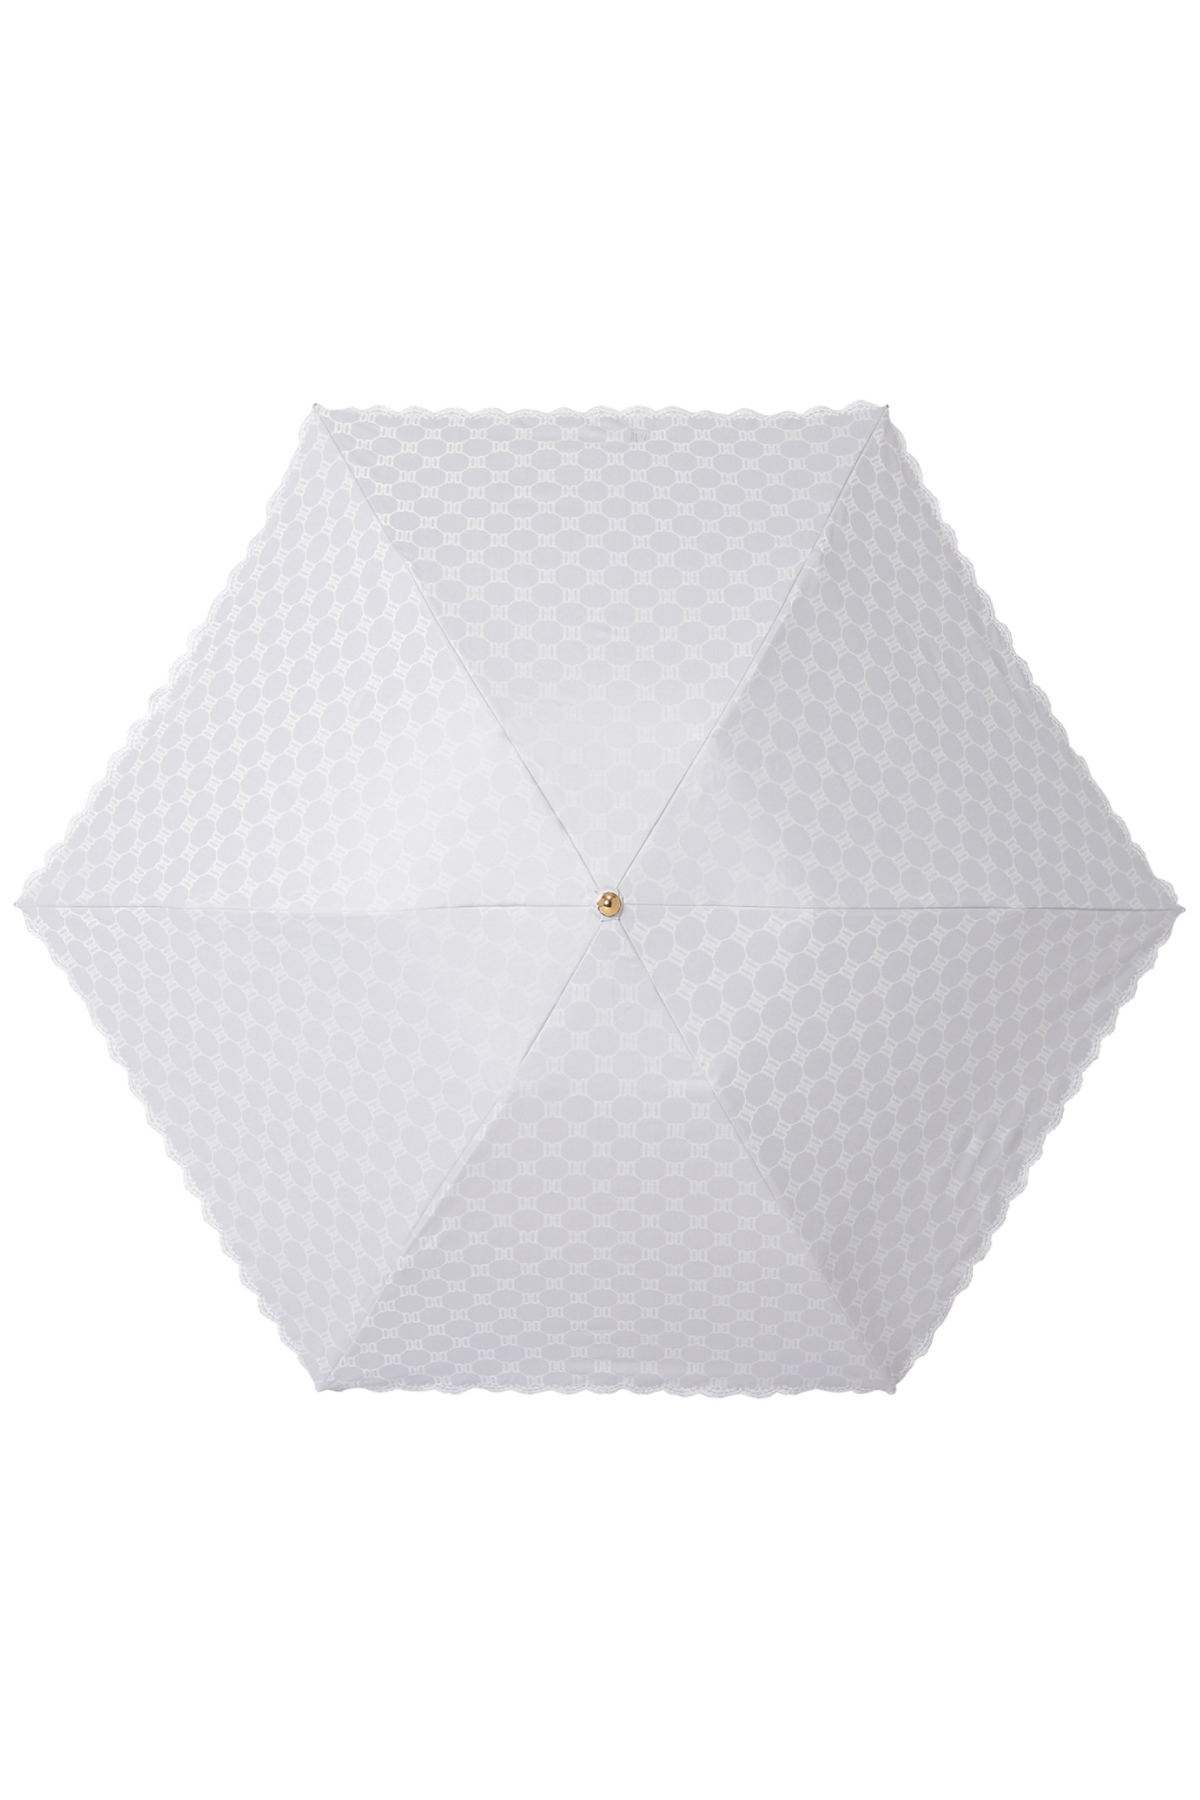 【日傘】ミニ折りたたみ傘ロゴジャカード刺繍 詳細画像 1